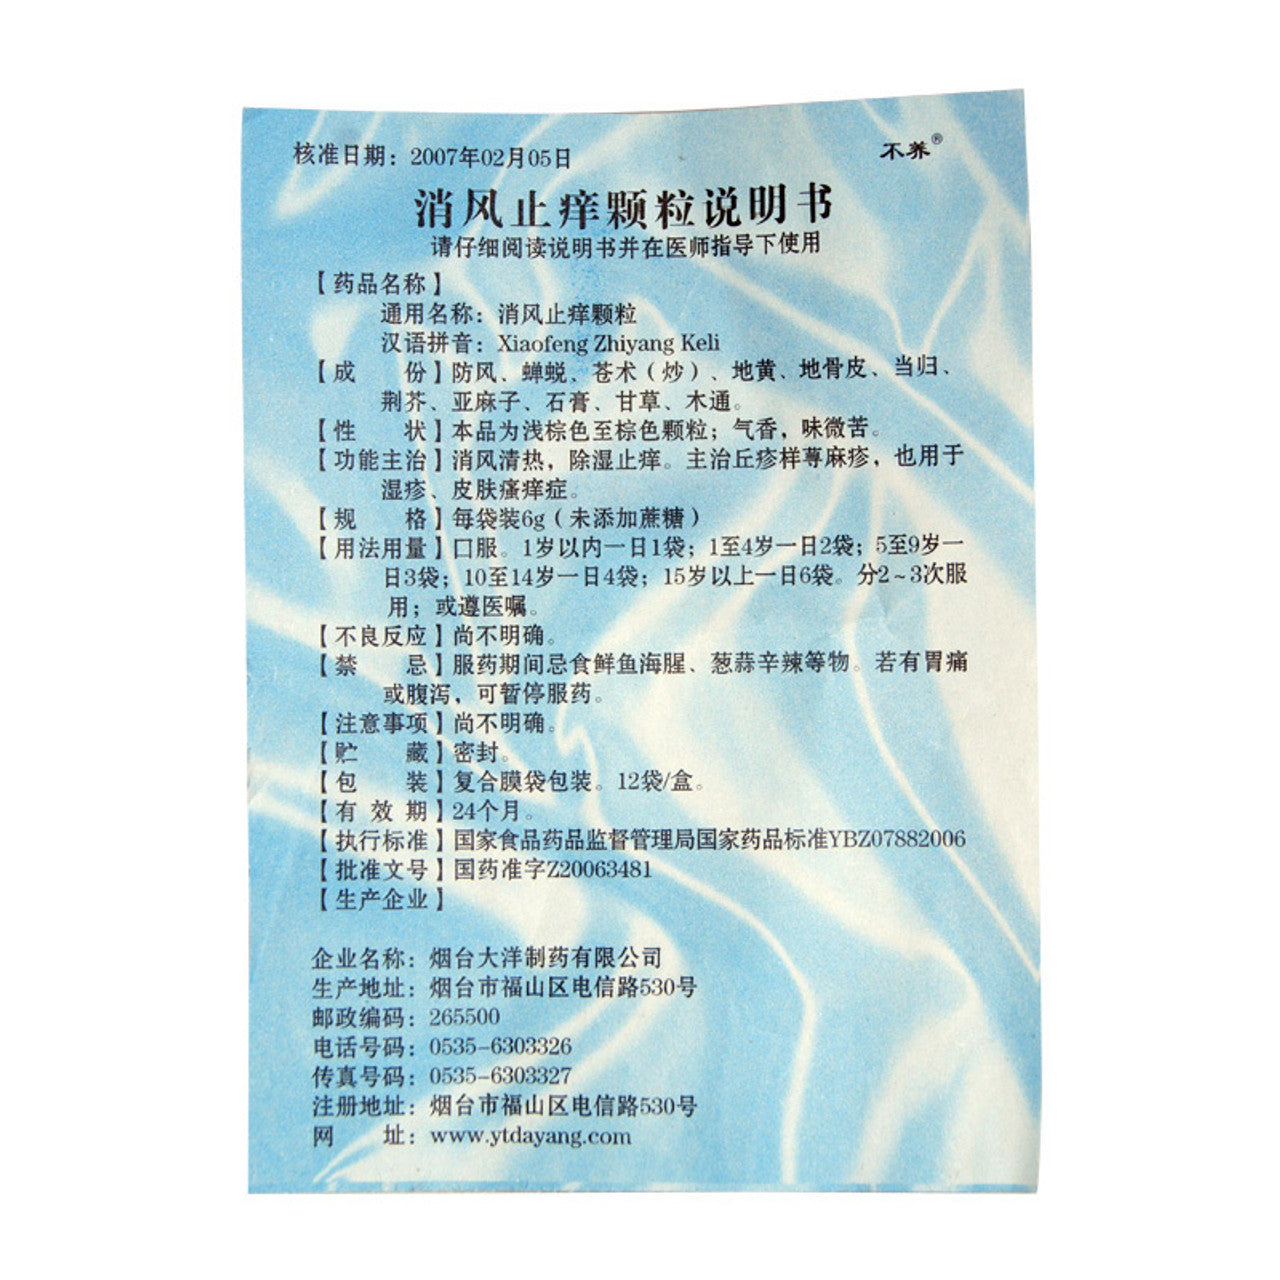 (12 sachets*5 boxes/lot). Xiaofeng Zhiyang Keli or Xiaofeng Zhiyang Granules For Urticaria